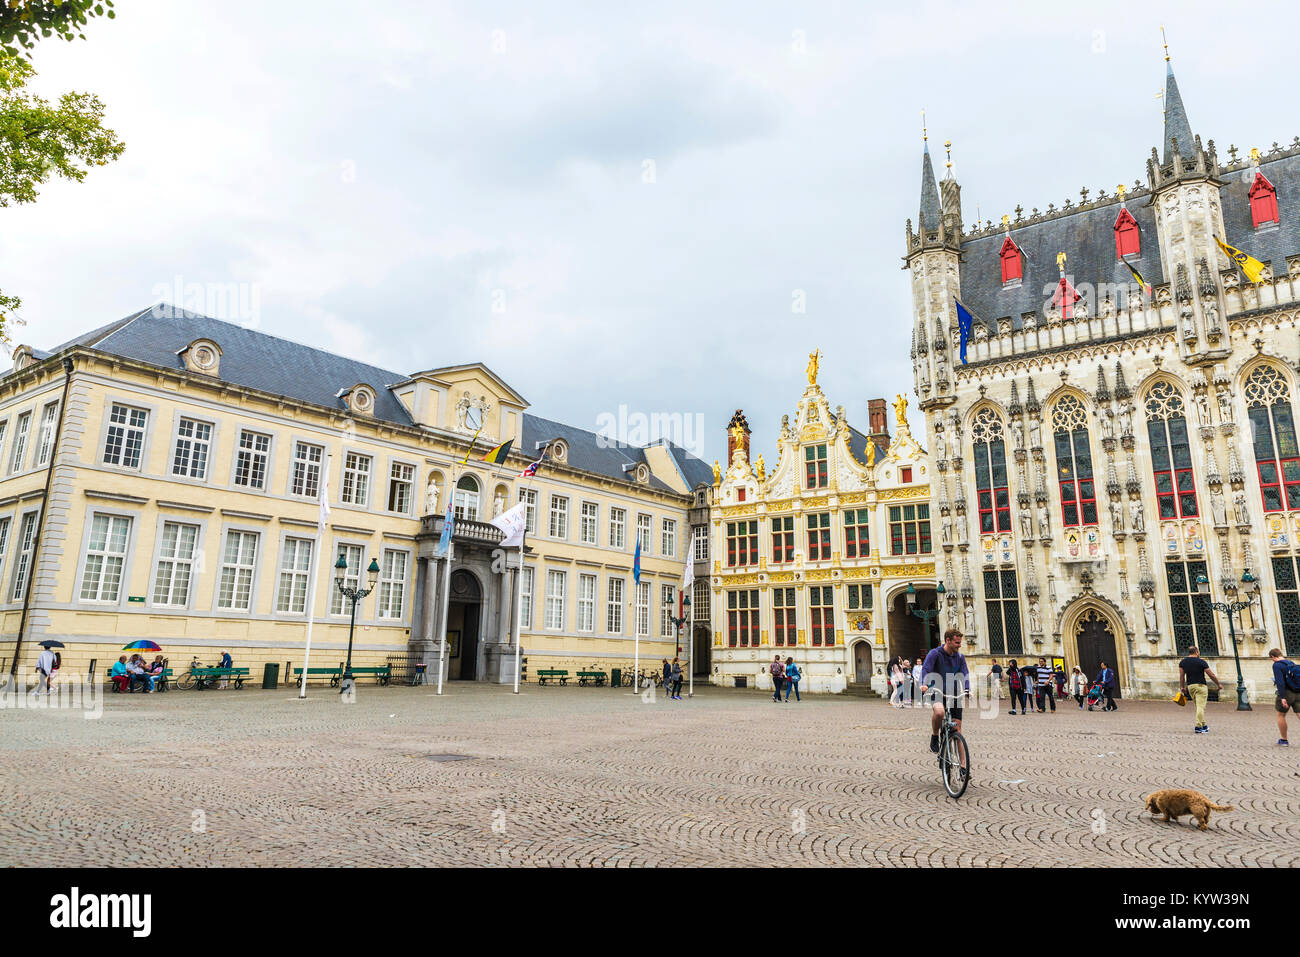 Bruges, Belgio - 31 agosto 2017: complesso architettonico in Piazza Burg con la City Hall e la vecchia registro civile ( Fietskoetsen ) e persone wa Foto Stock